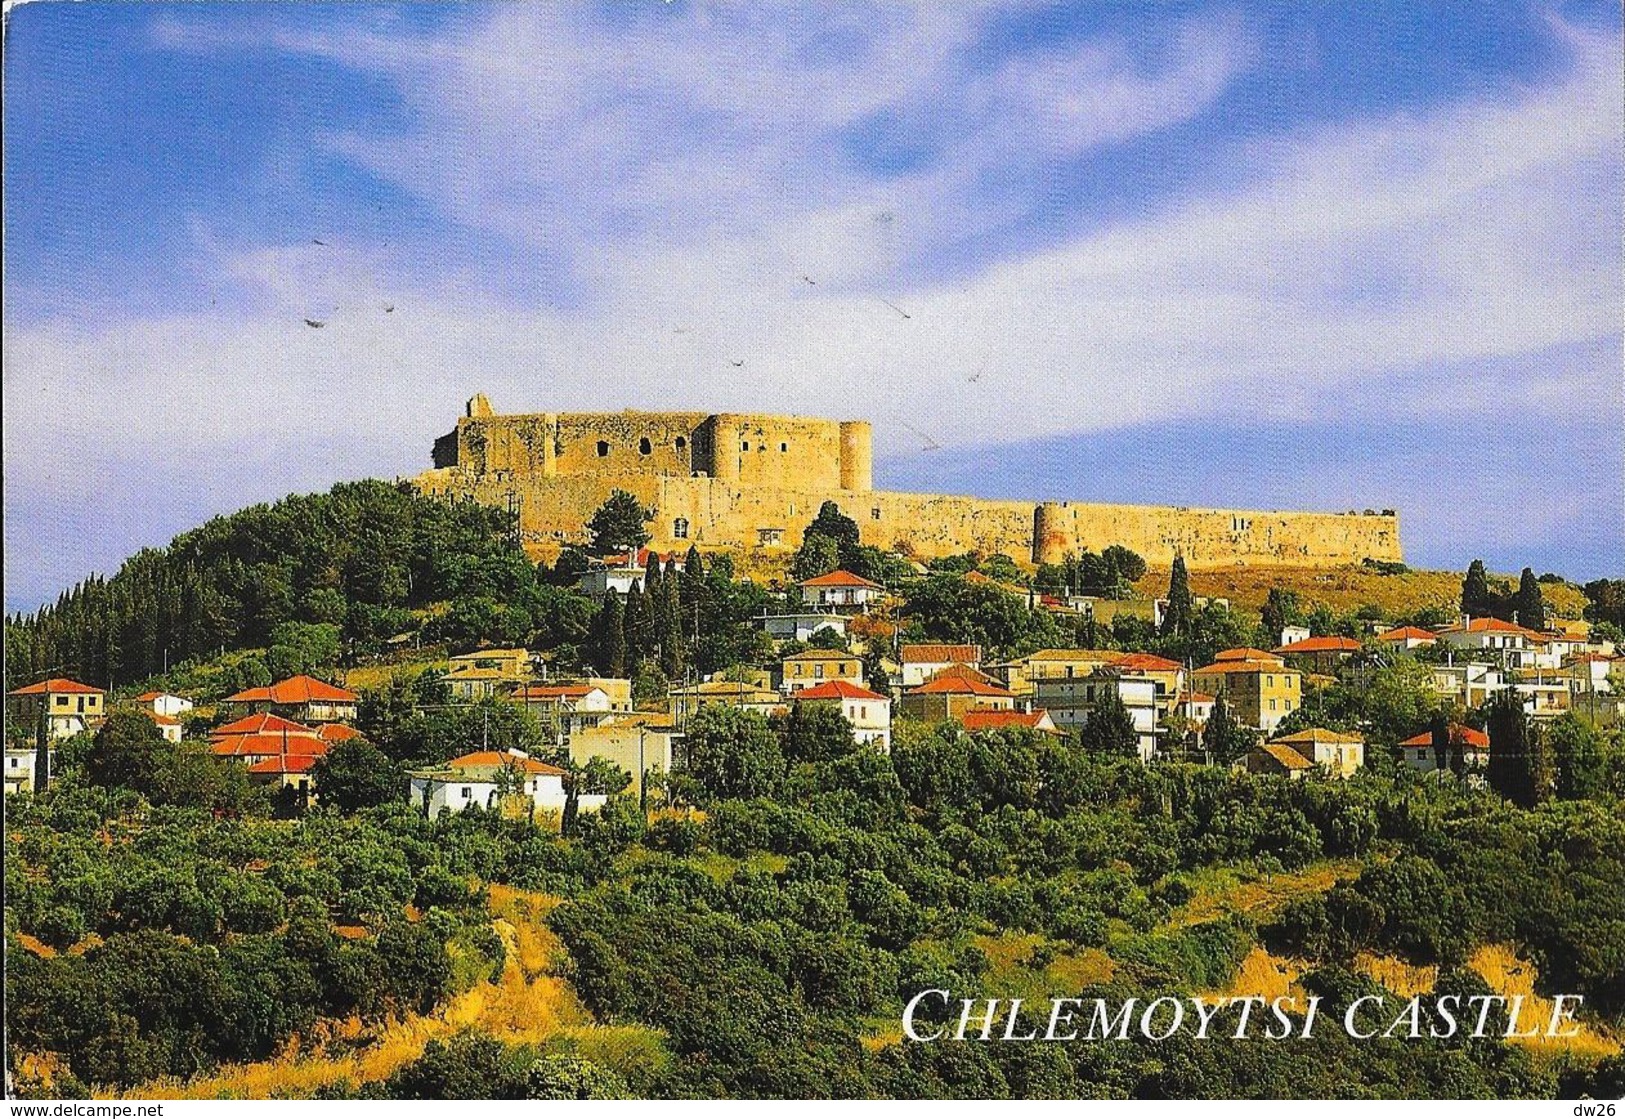 Grèce - Killini - Chlemoytsi (Chlemoutsi) Castle - Editions Haitalis - Greece